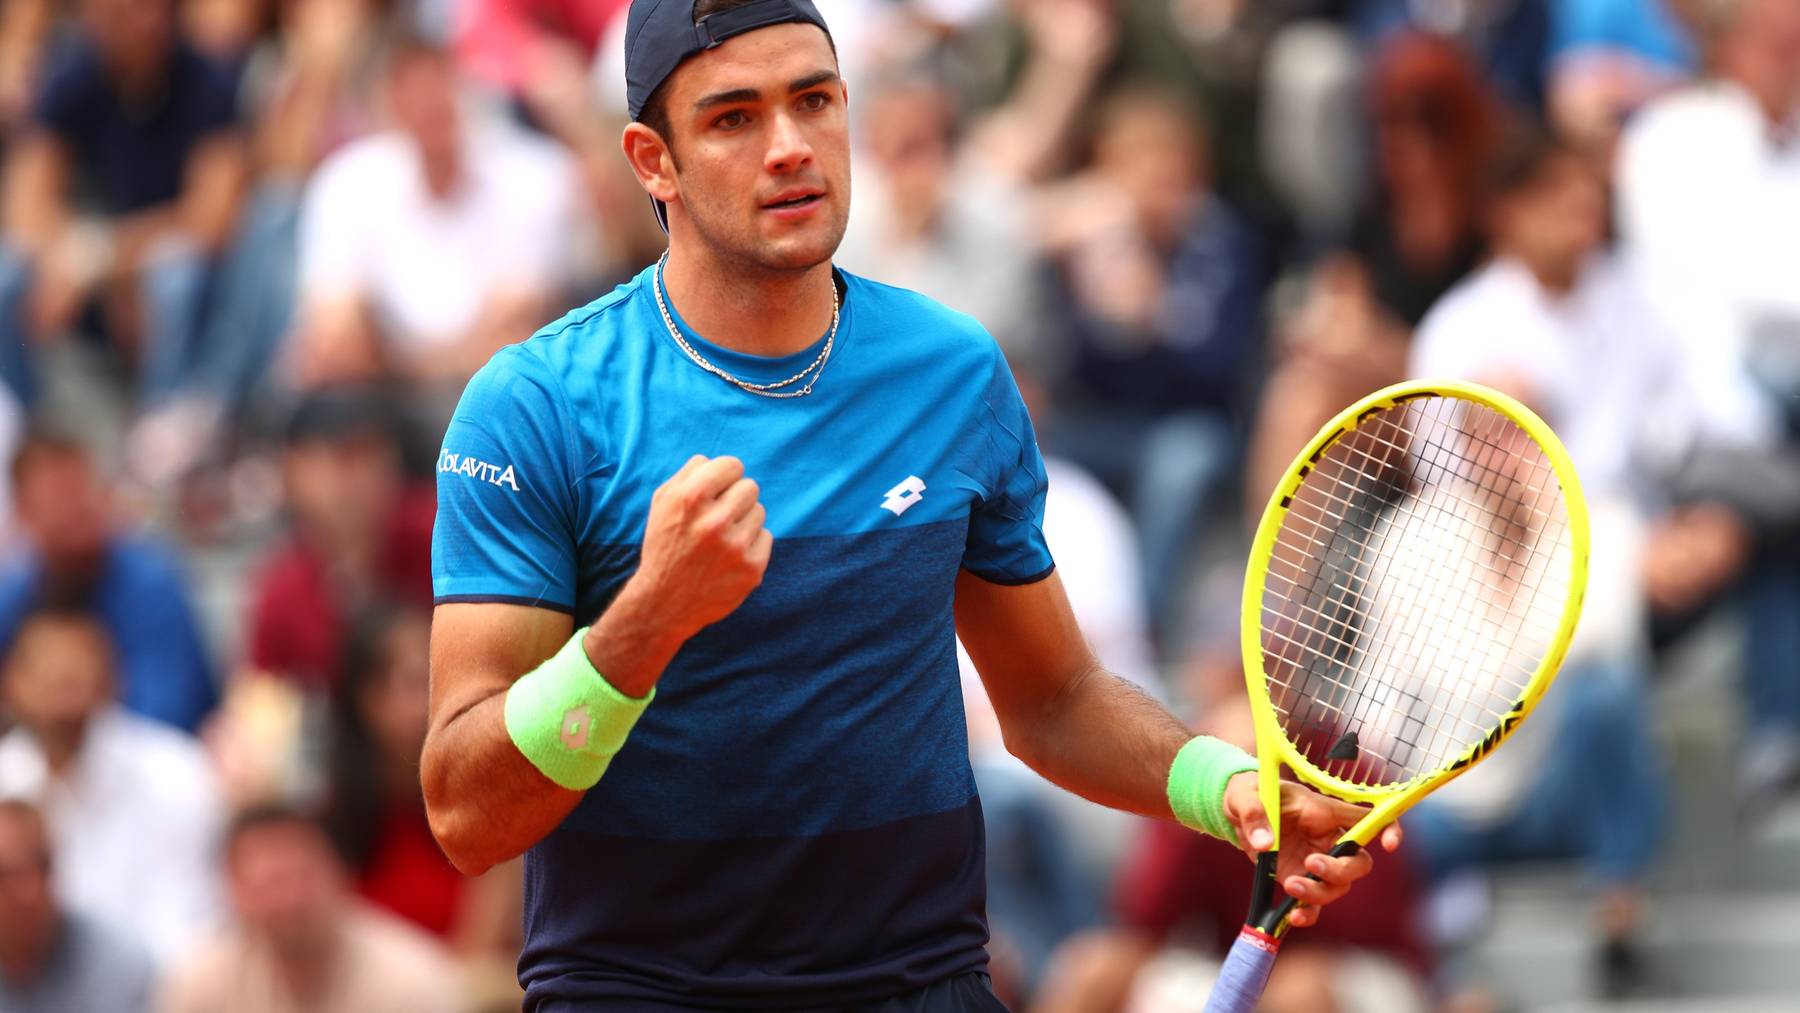 Der 23-jährige Matteo Berrettini könnte eine Herausforderung für Federer werden.